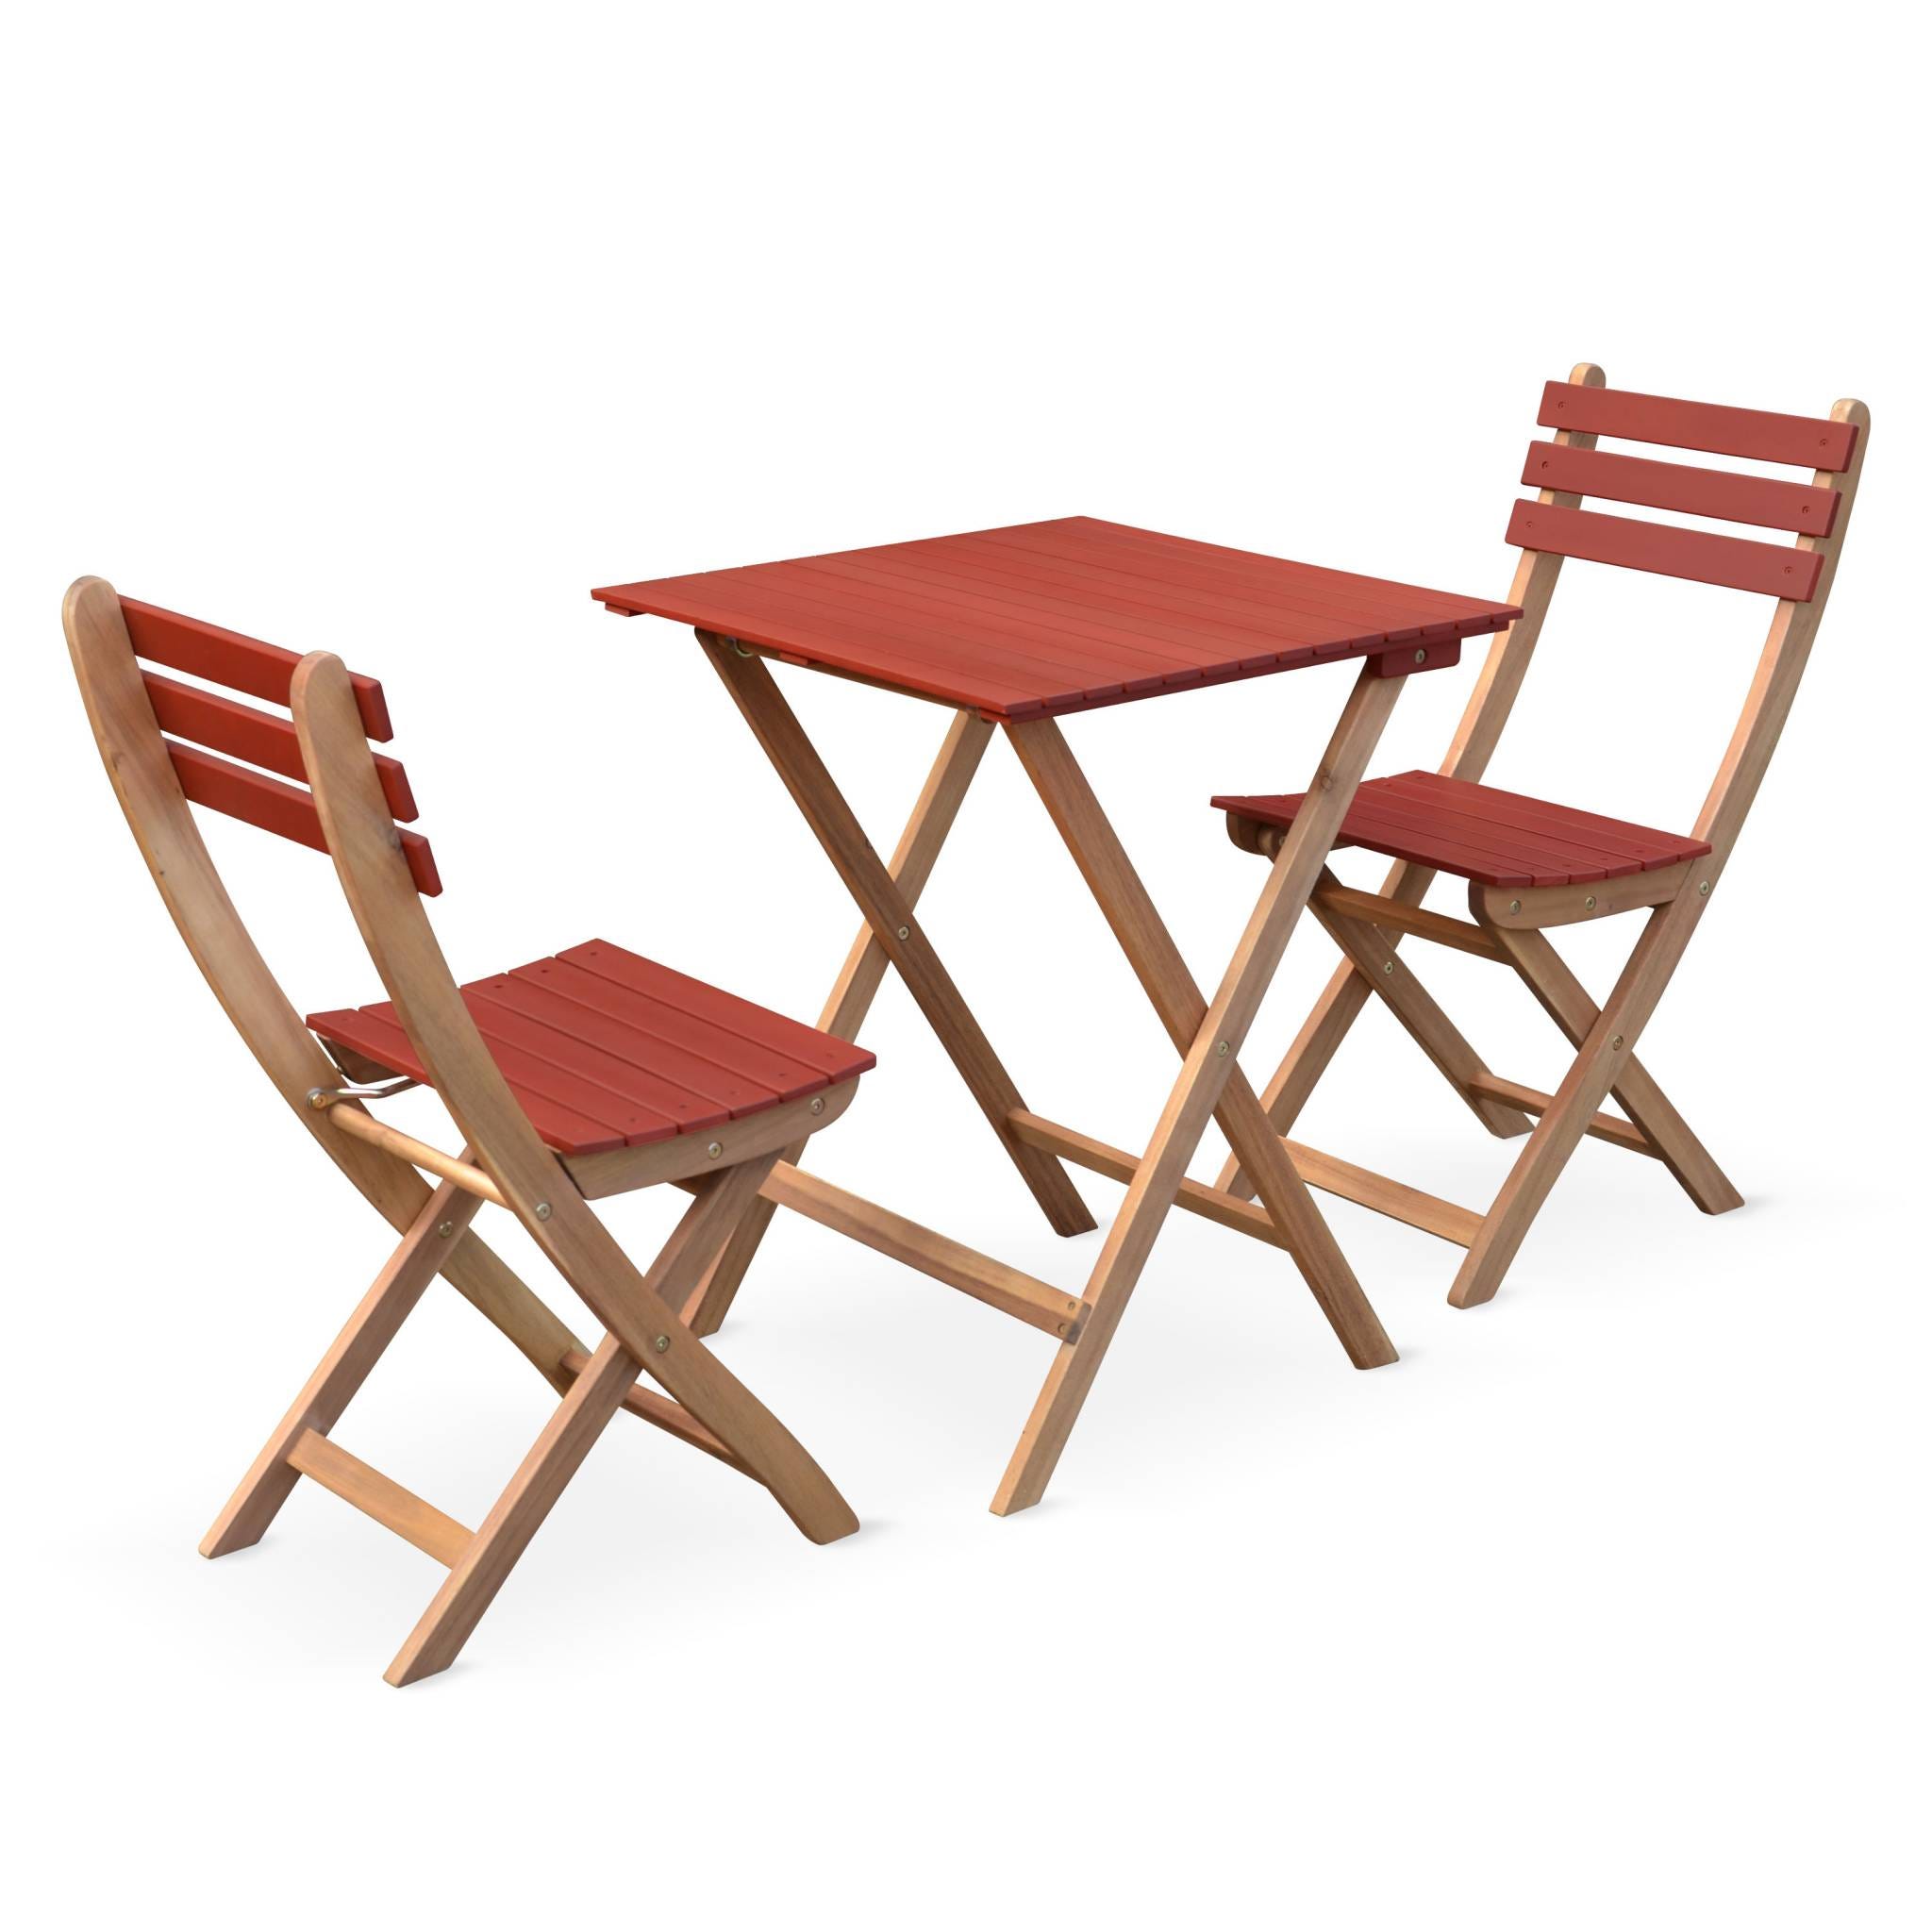 Conjunto de jardín de madera Bistro 60x60cm - Barcelona - terracota, mesa  plegable cuadrada bicolor con 2 sillas plegables, acacia